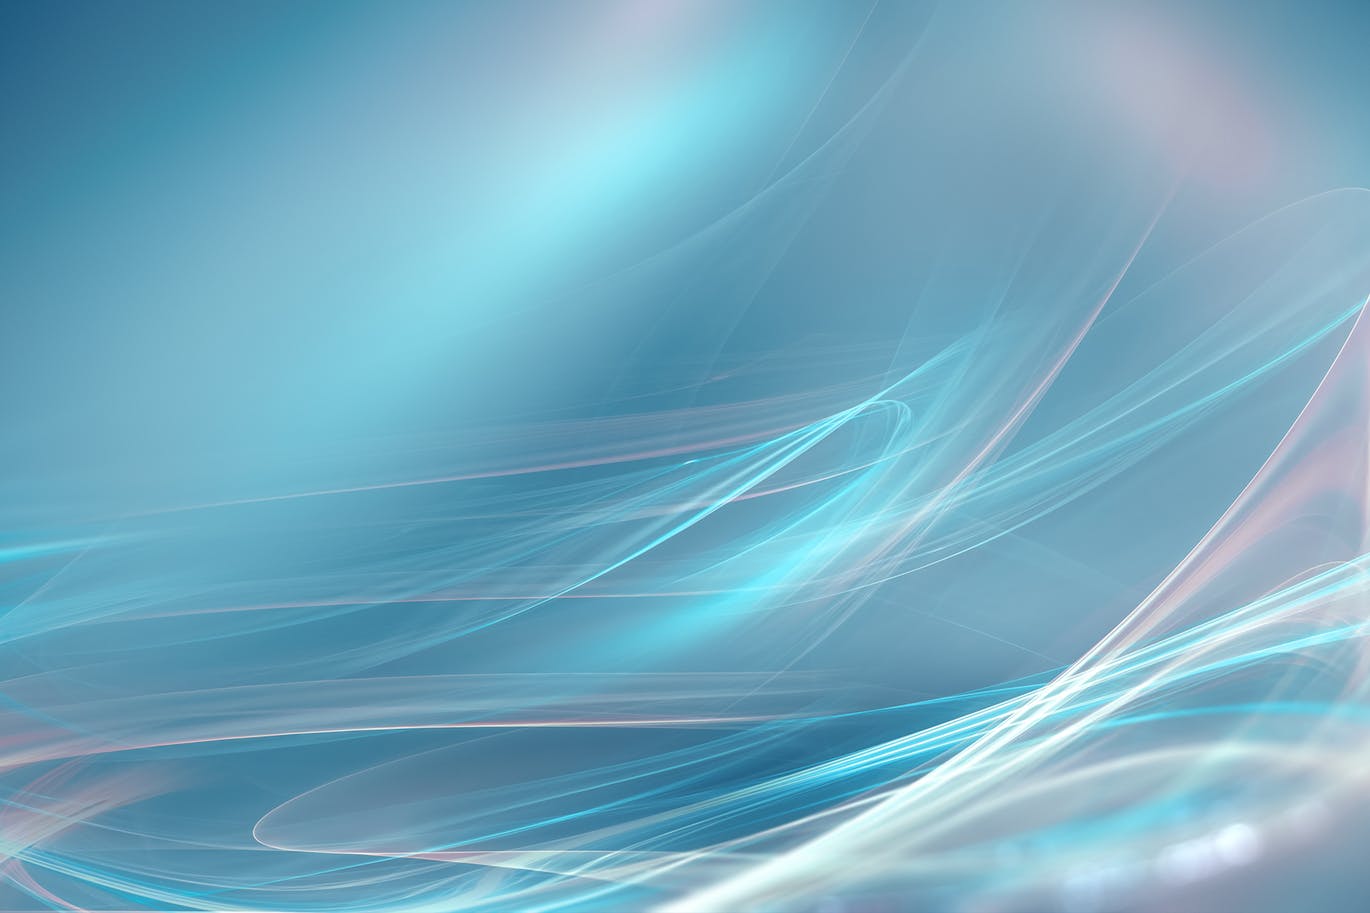 超高清抽象平滑线条蓝色背景图片素材v2 Abstract Blue Background 第一素材网